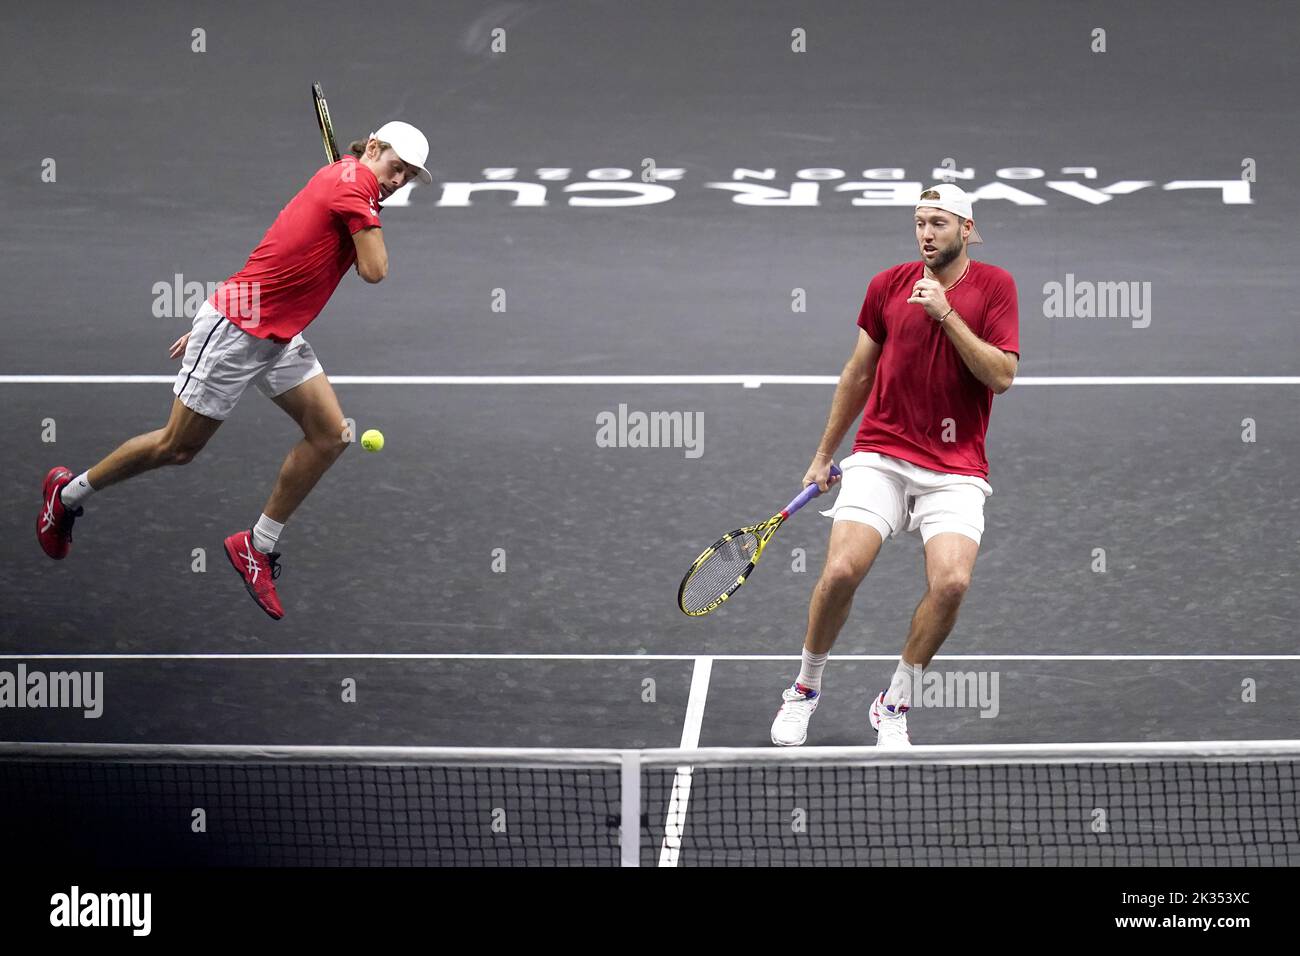 Alex De Minaur, (izquierda) y Jack Sock durante su partido de dobles contra Novak Djokovic y Matteo Berrettini en el segundo día de la Copa Laver en el O2 Arena, Londres. Fecha de la foto: Sábado 24 de septiembre de 2022. Foto de stock